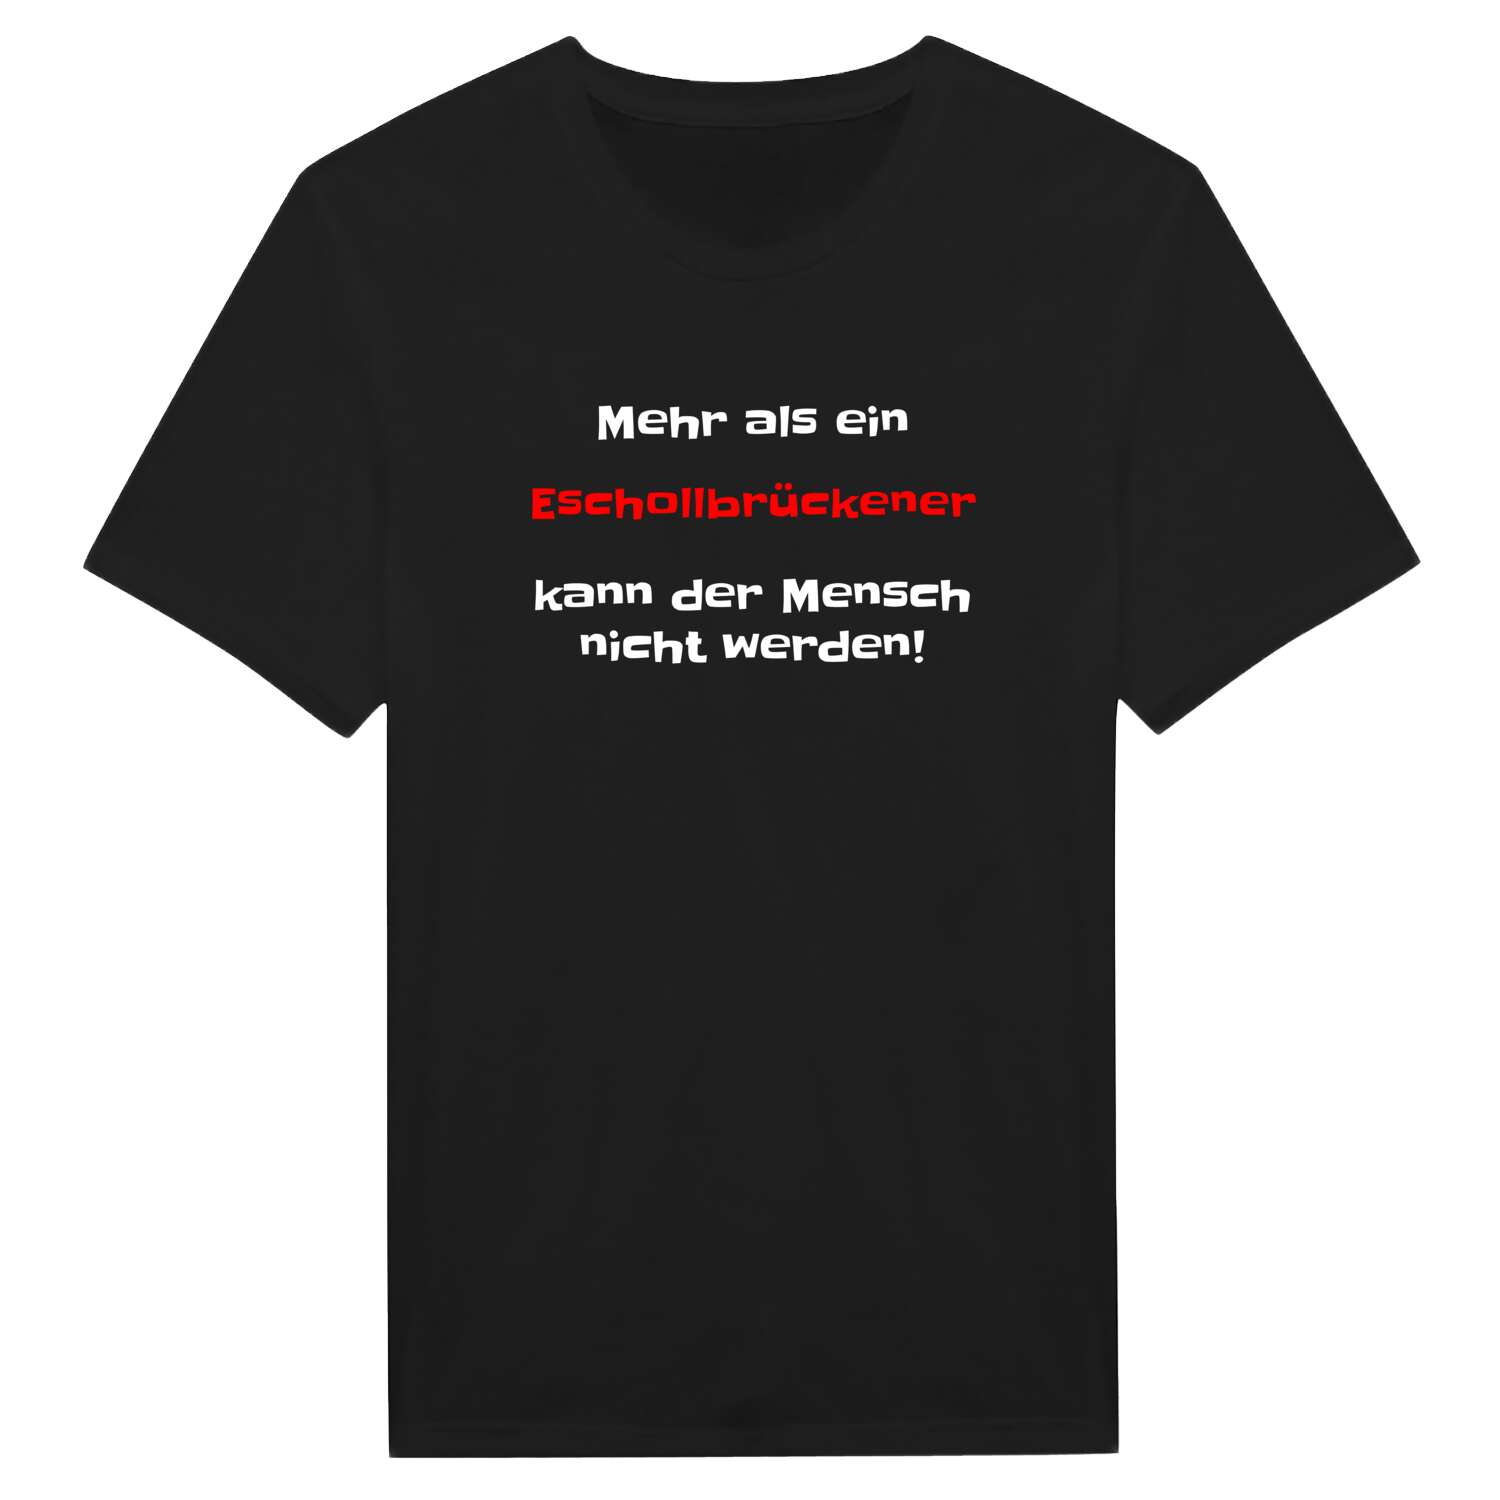 Eschollbrücken T-Shirt »Mehr als ein«